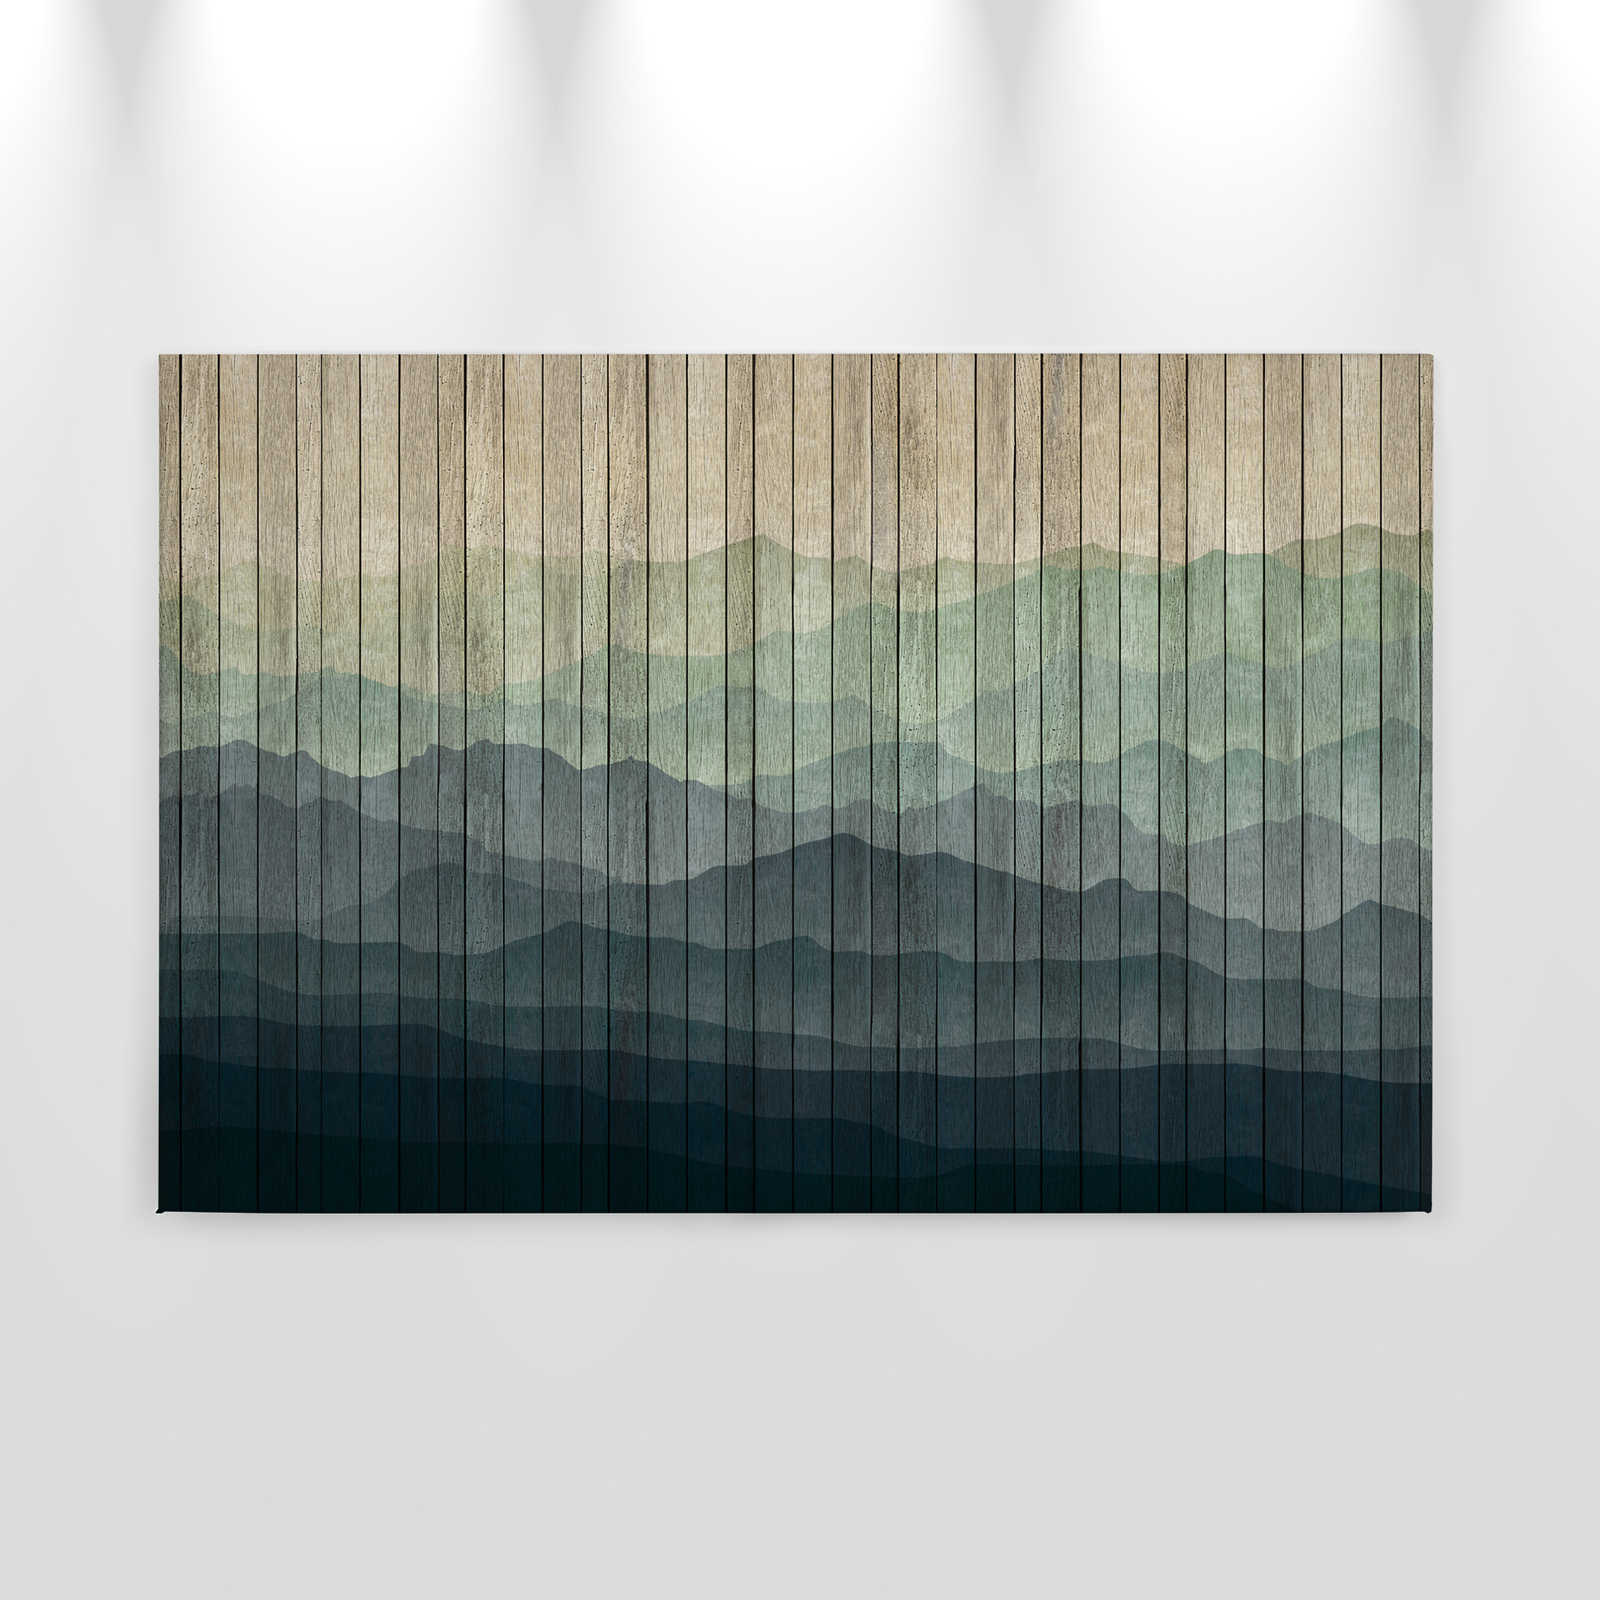             Mountains 1 - toile moderne paysage de montagne & aspect planche - 0,90 m x 0,60 m
        